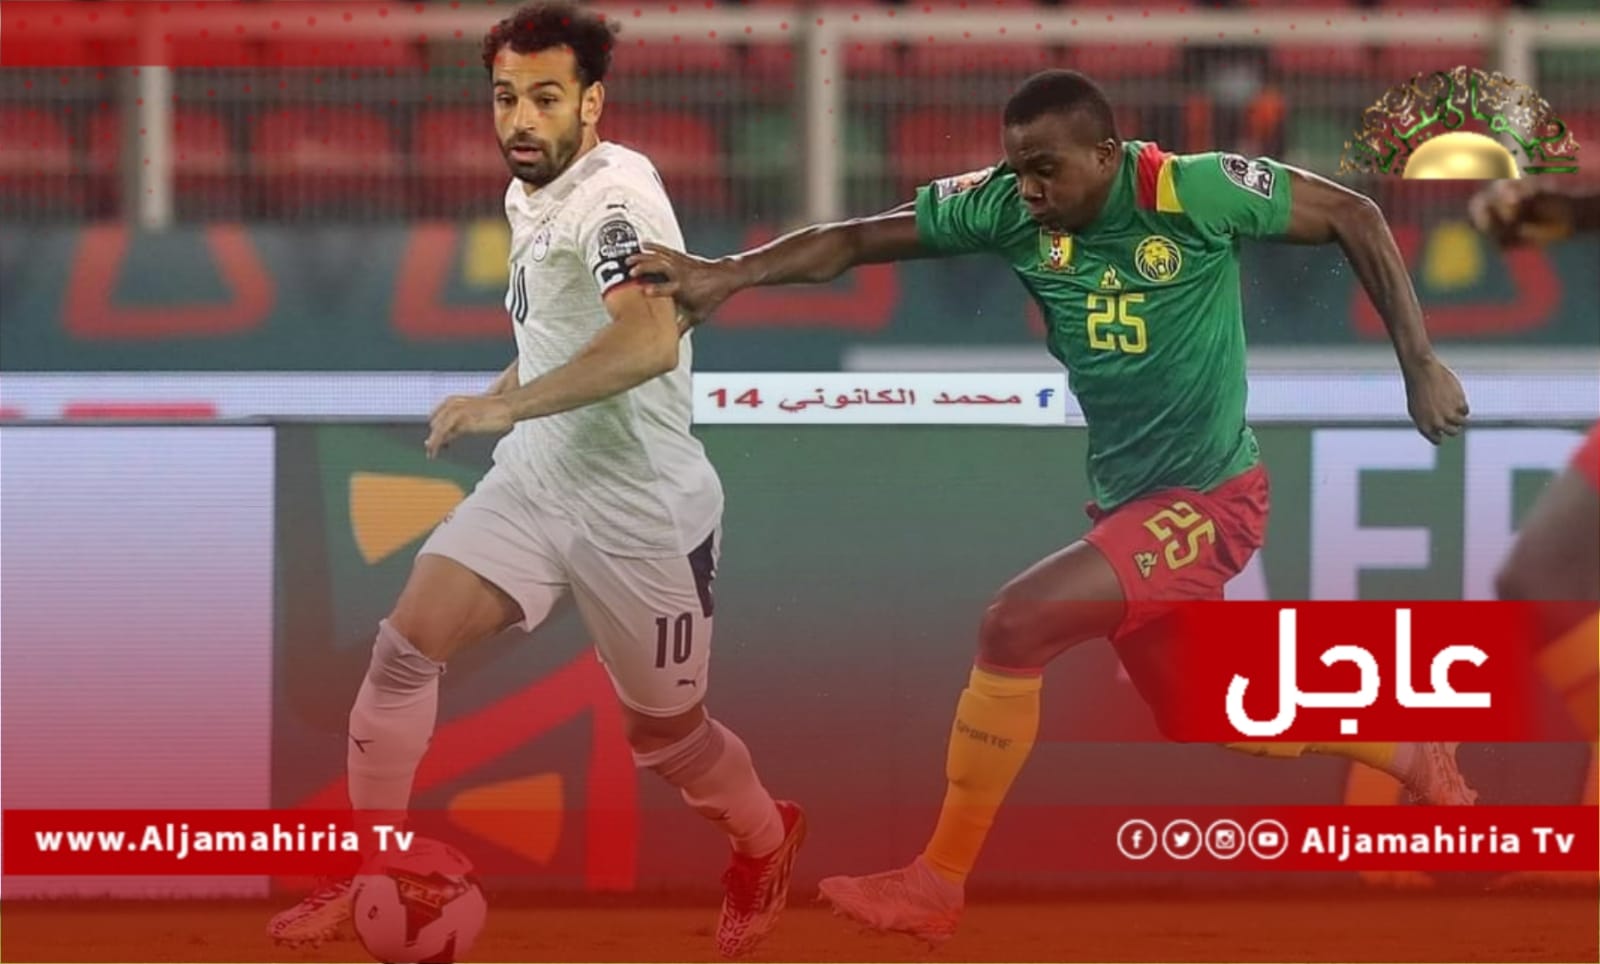 عاجل| منتخب مصر يتأهل لنهائي أمم أفريقيا بفوزه بثلاث أهداف لهدفين أمام الكاميرون